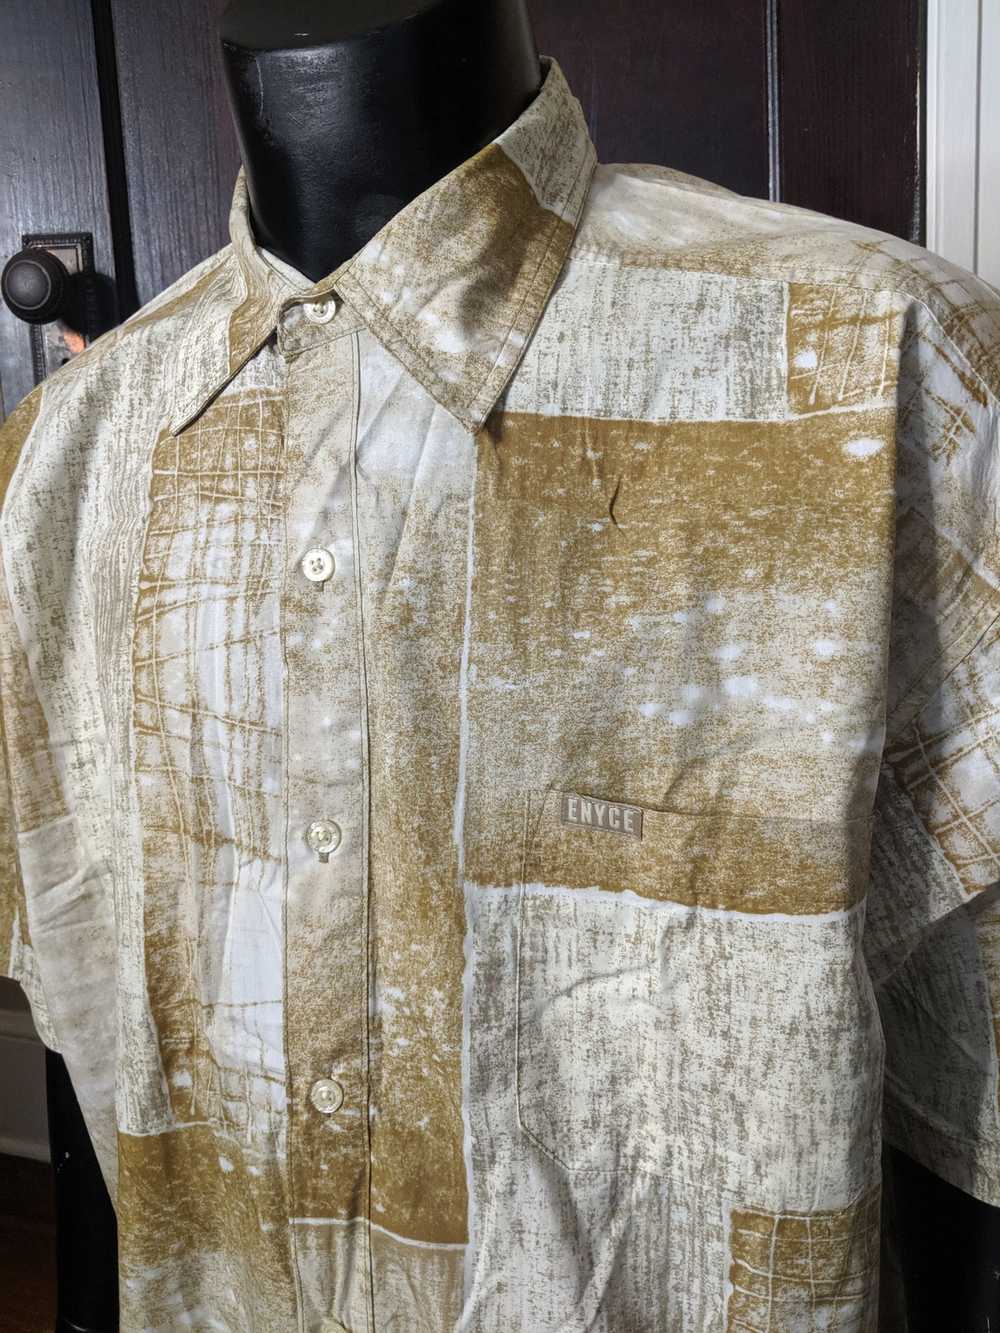 Enyce Tan patterned shirt sleeve shirt - image 2